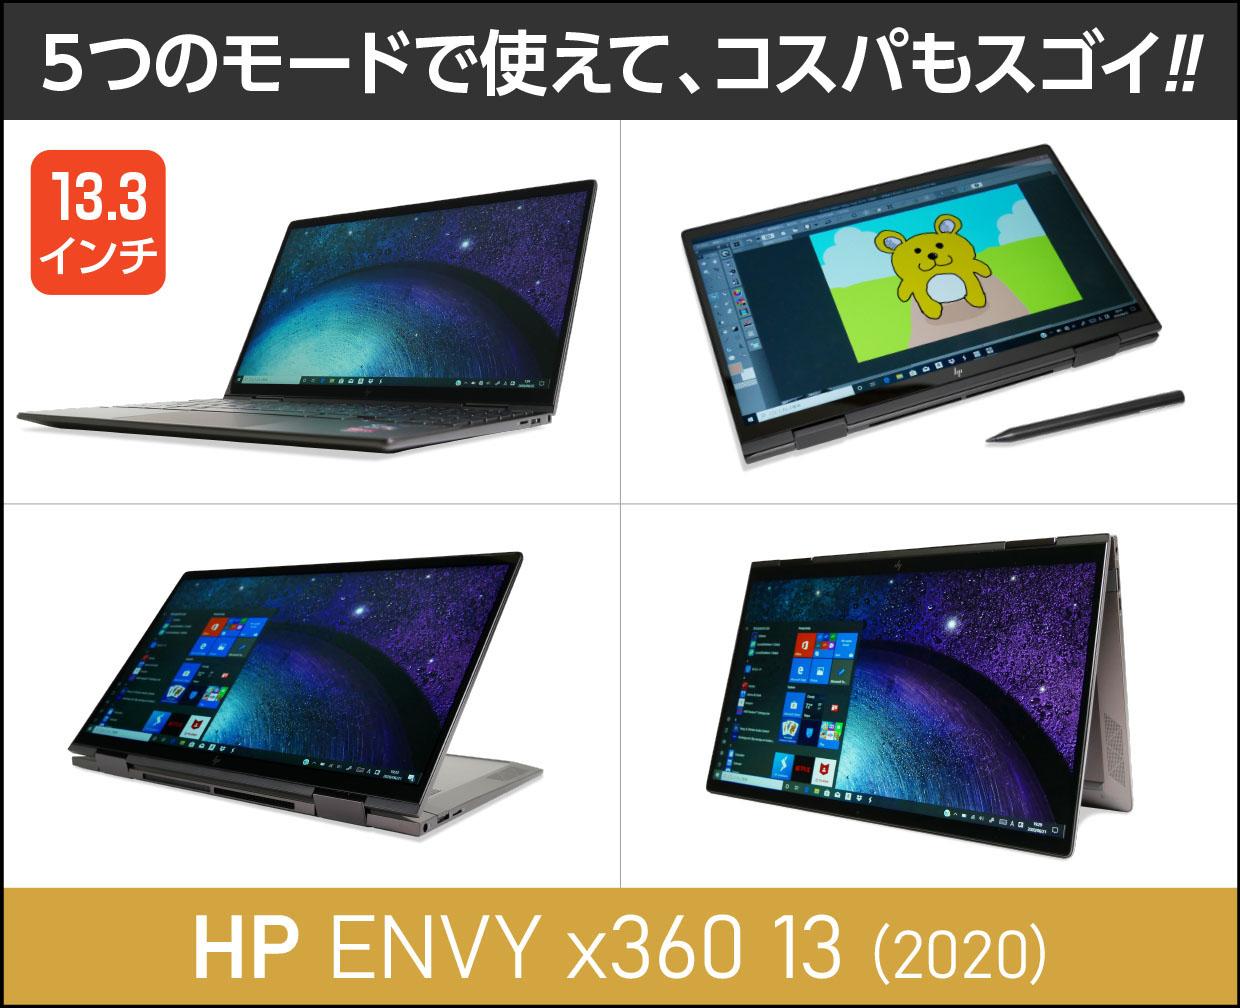 HP ENVY x360 13【2020年モデル】実機レビュー！30秒でわかる注意点とポイント掲載。幅広く使えてコスパも凄い！ |  これがおすすめノートパソコン